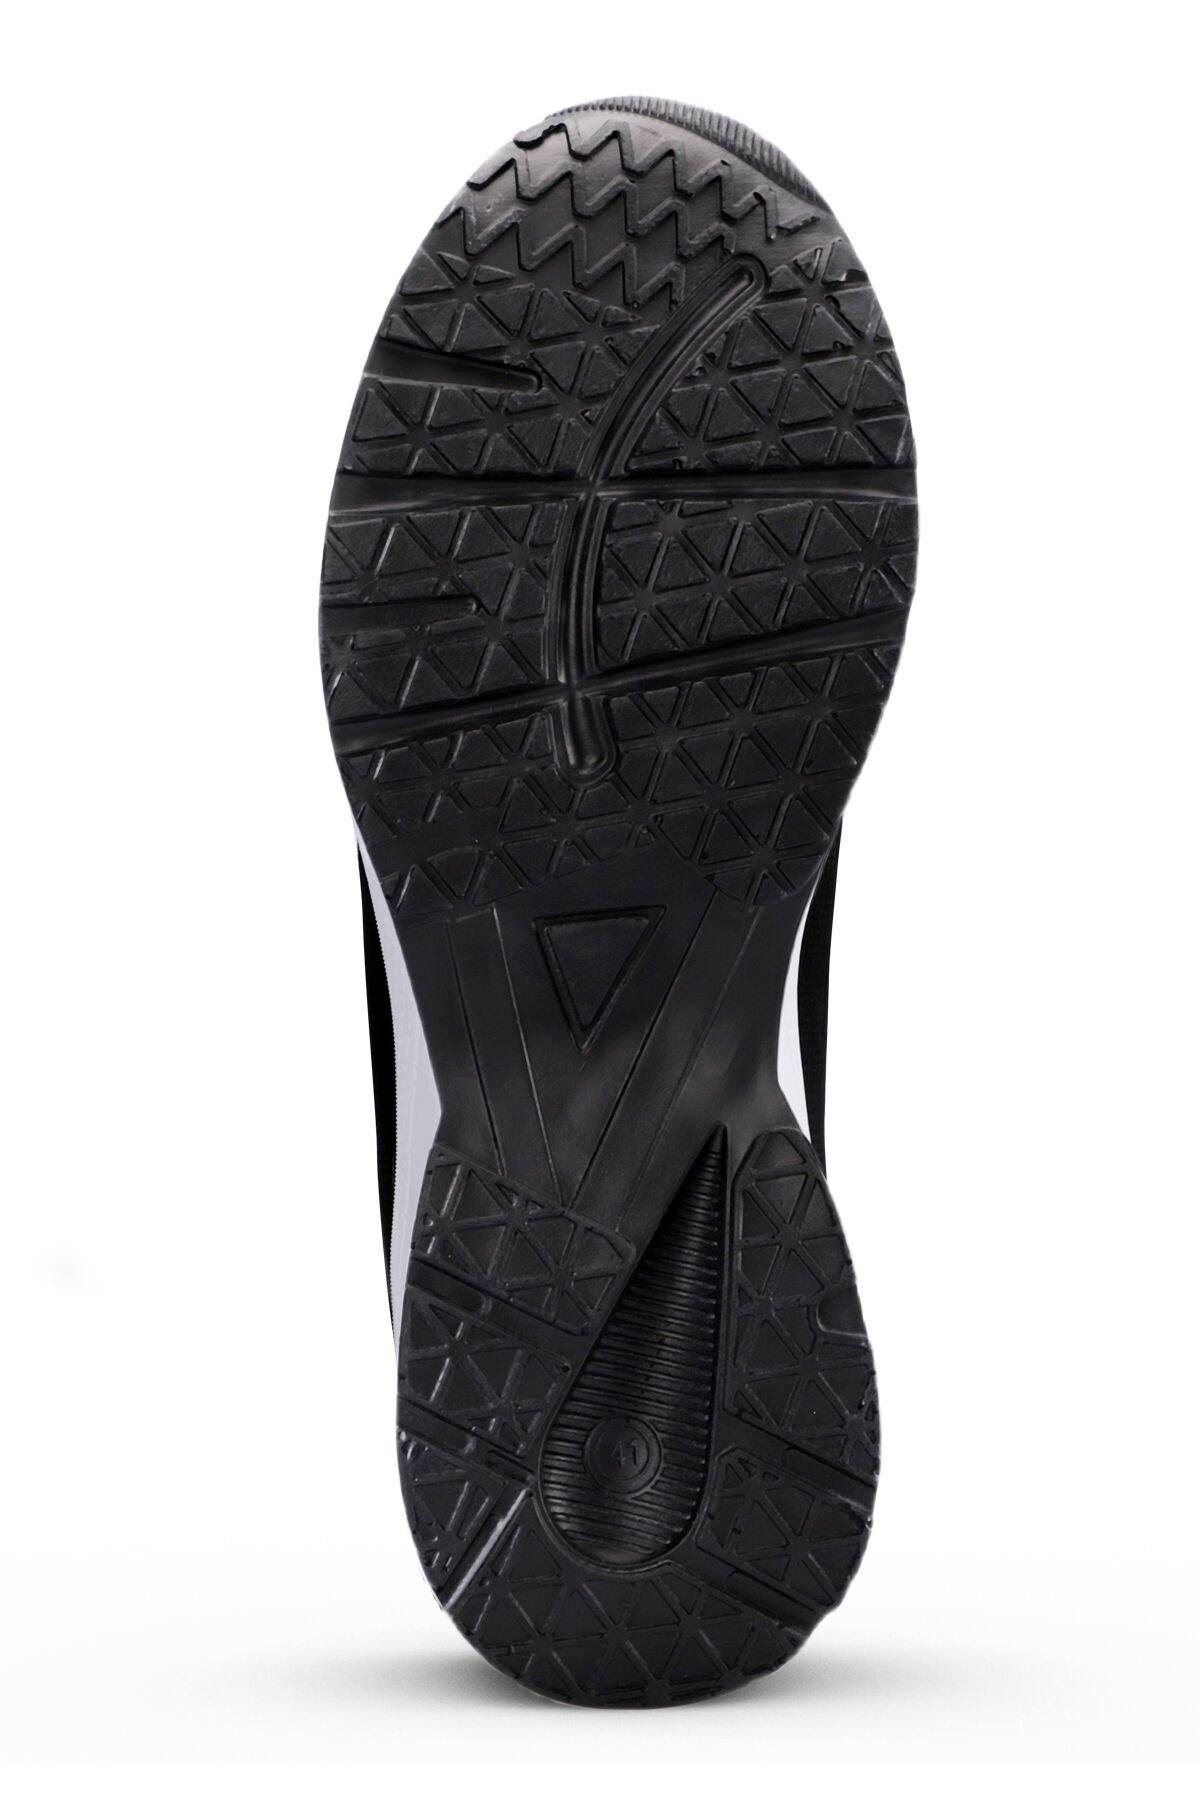 MAJA I Sneaker Kadın Ayakkabı Koyu Gri / Siyah - Thumbnail